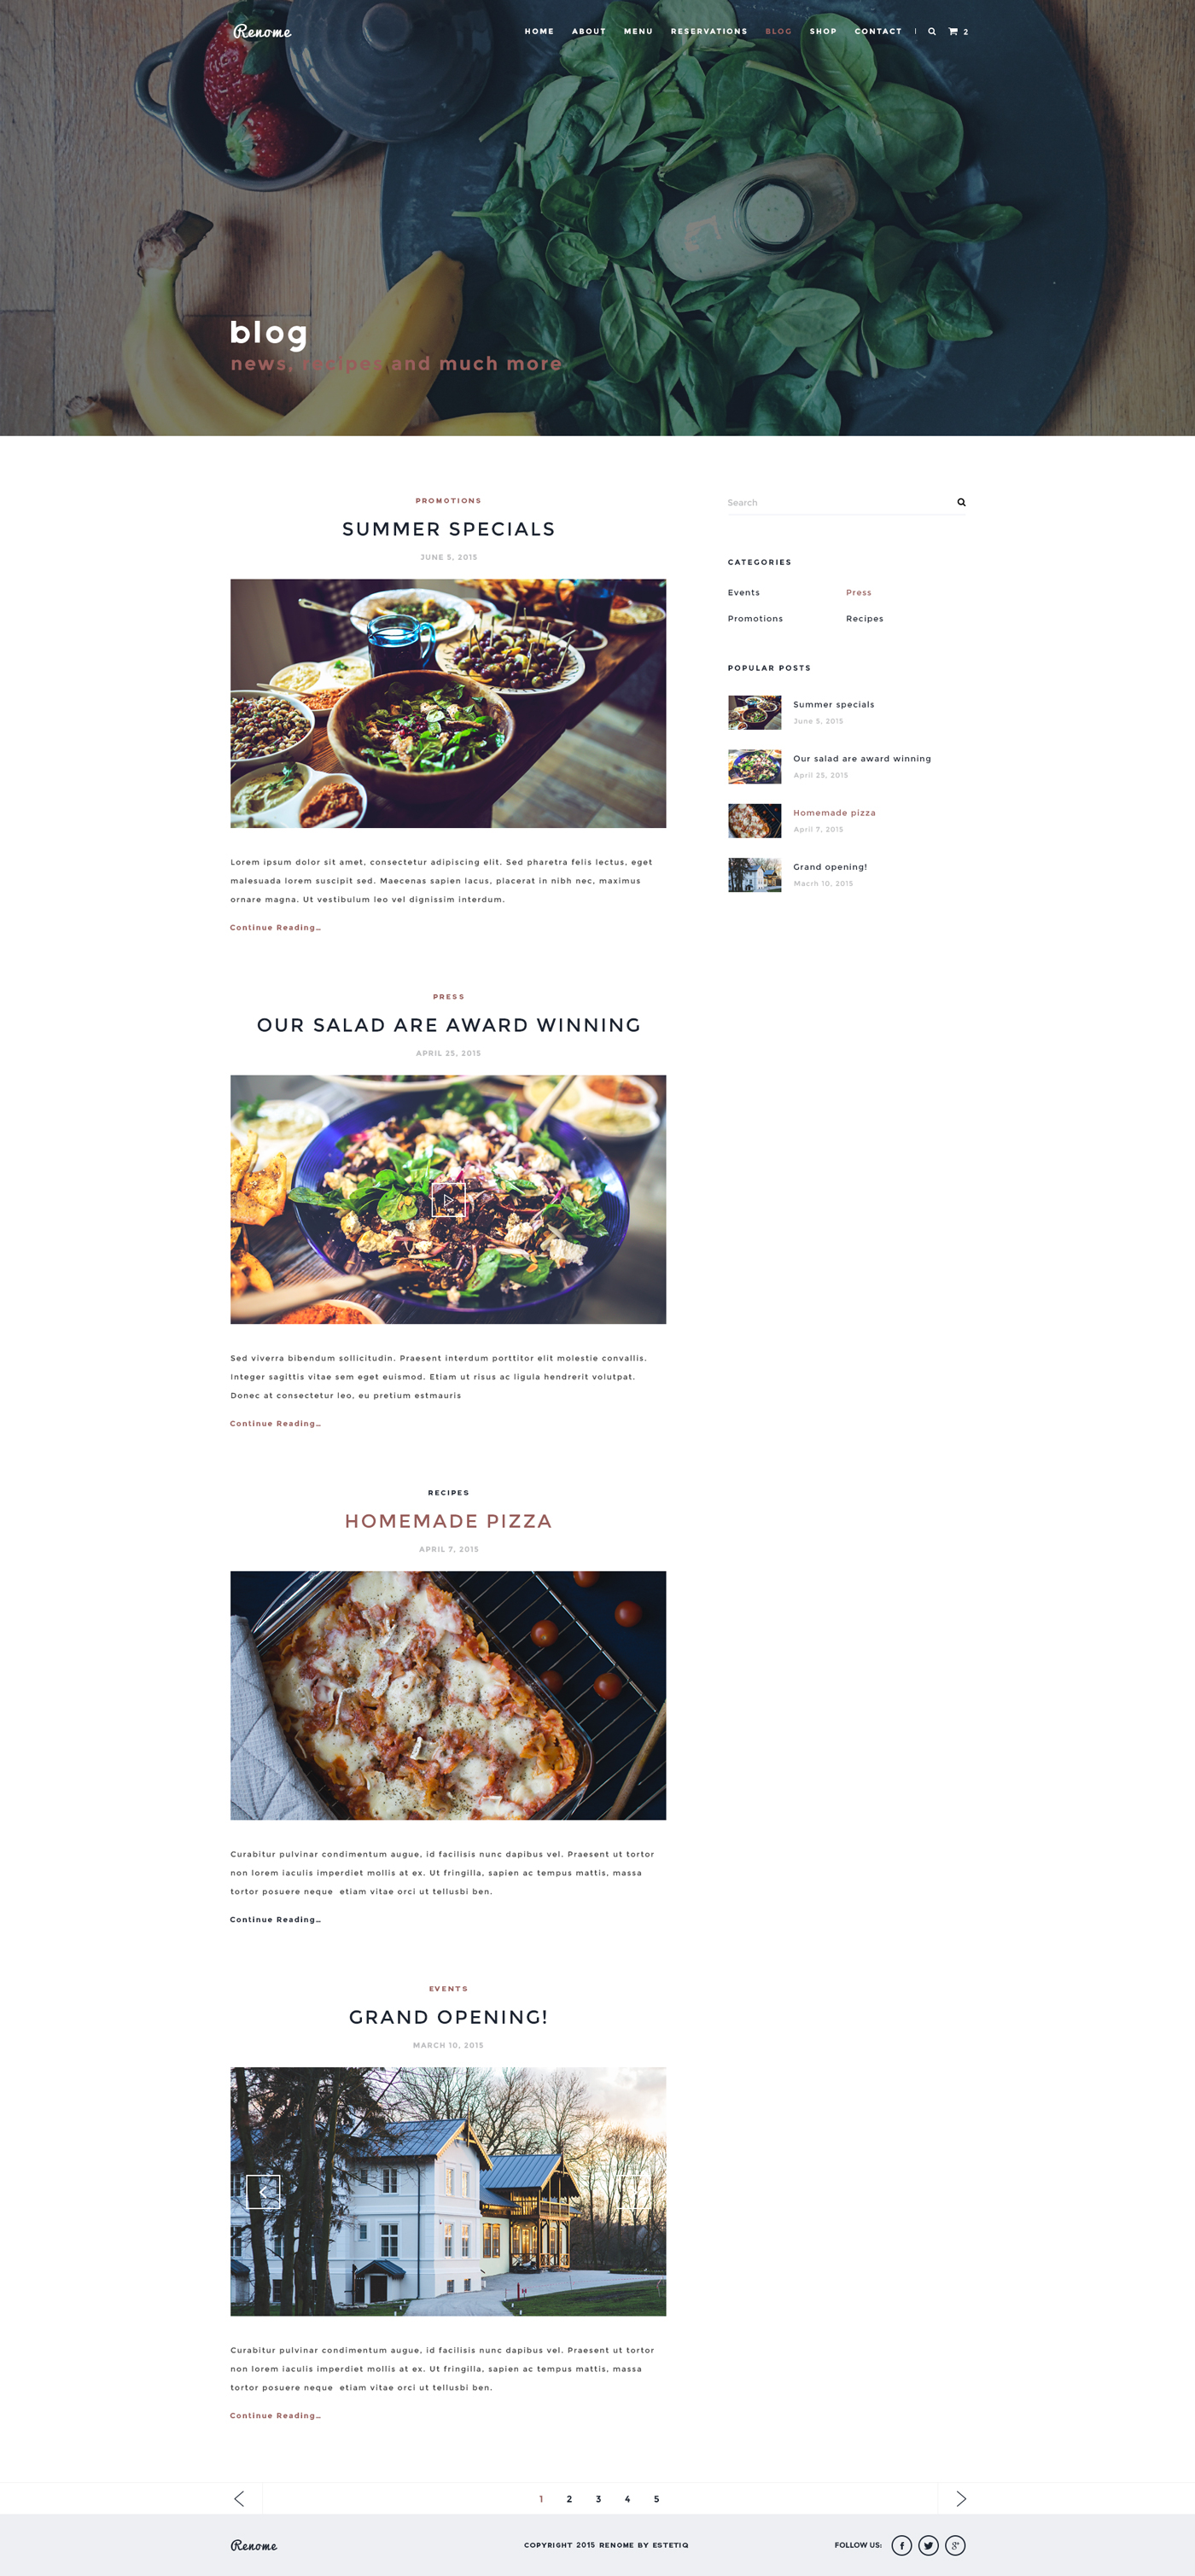 psd free restaurant template shop portfolio Blog Responsive free psd Website download